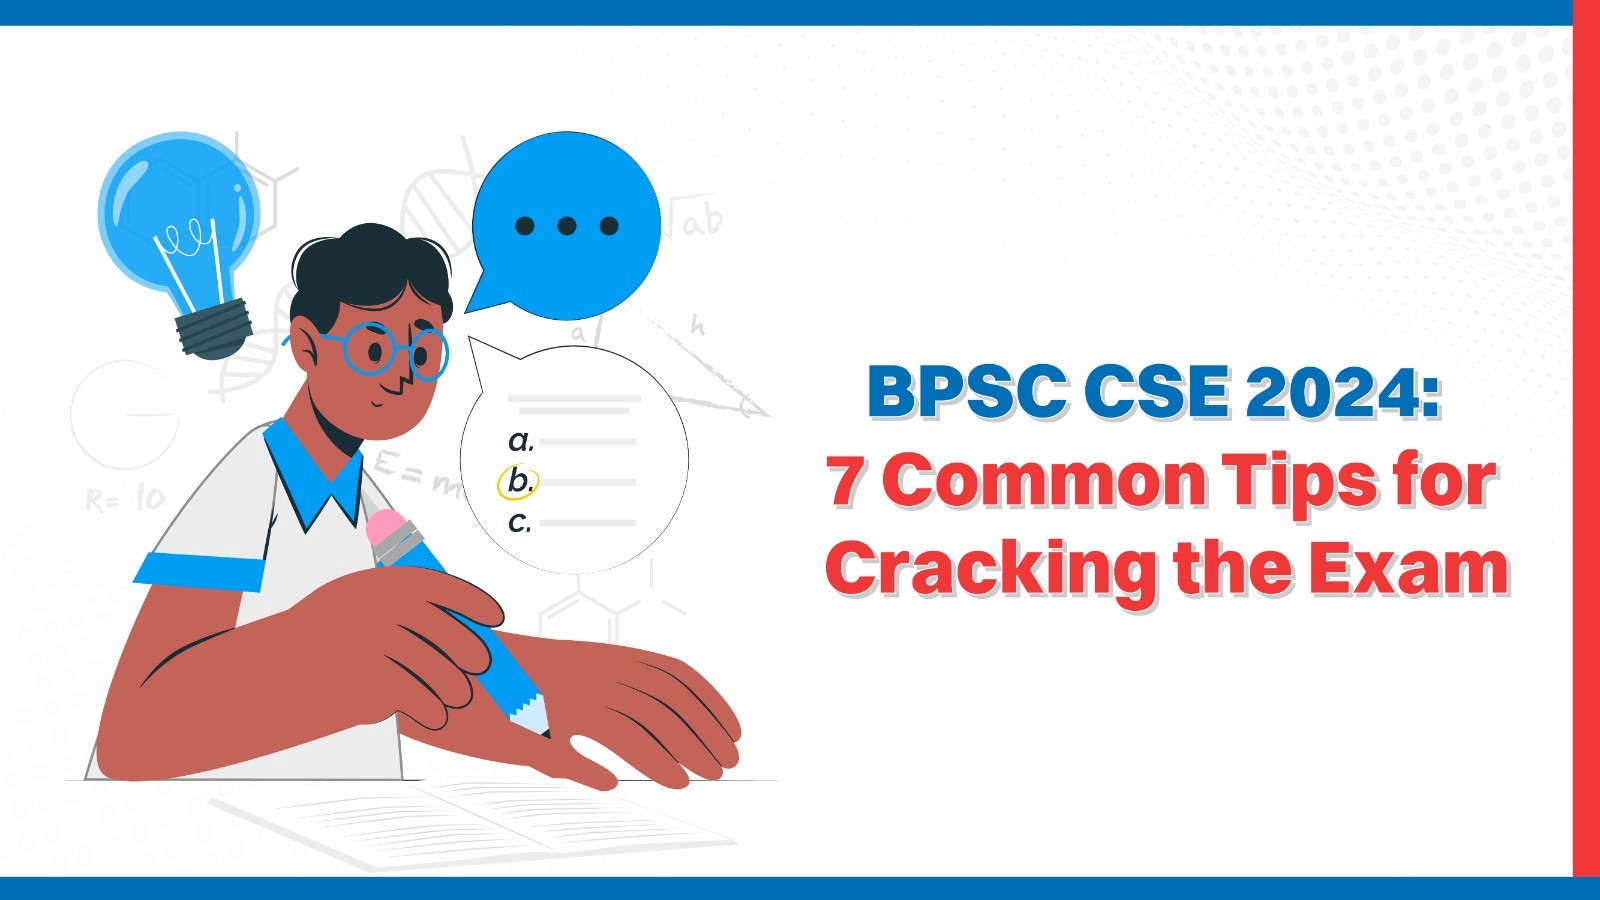 BPSC CSE 2024 7 Common Tips for Cracking the Exam.jpg